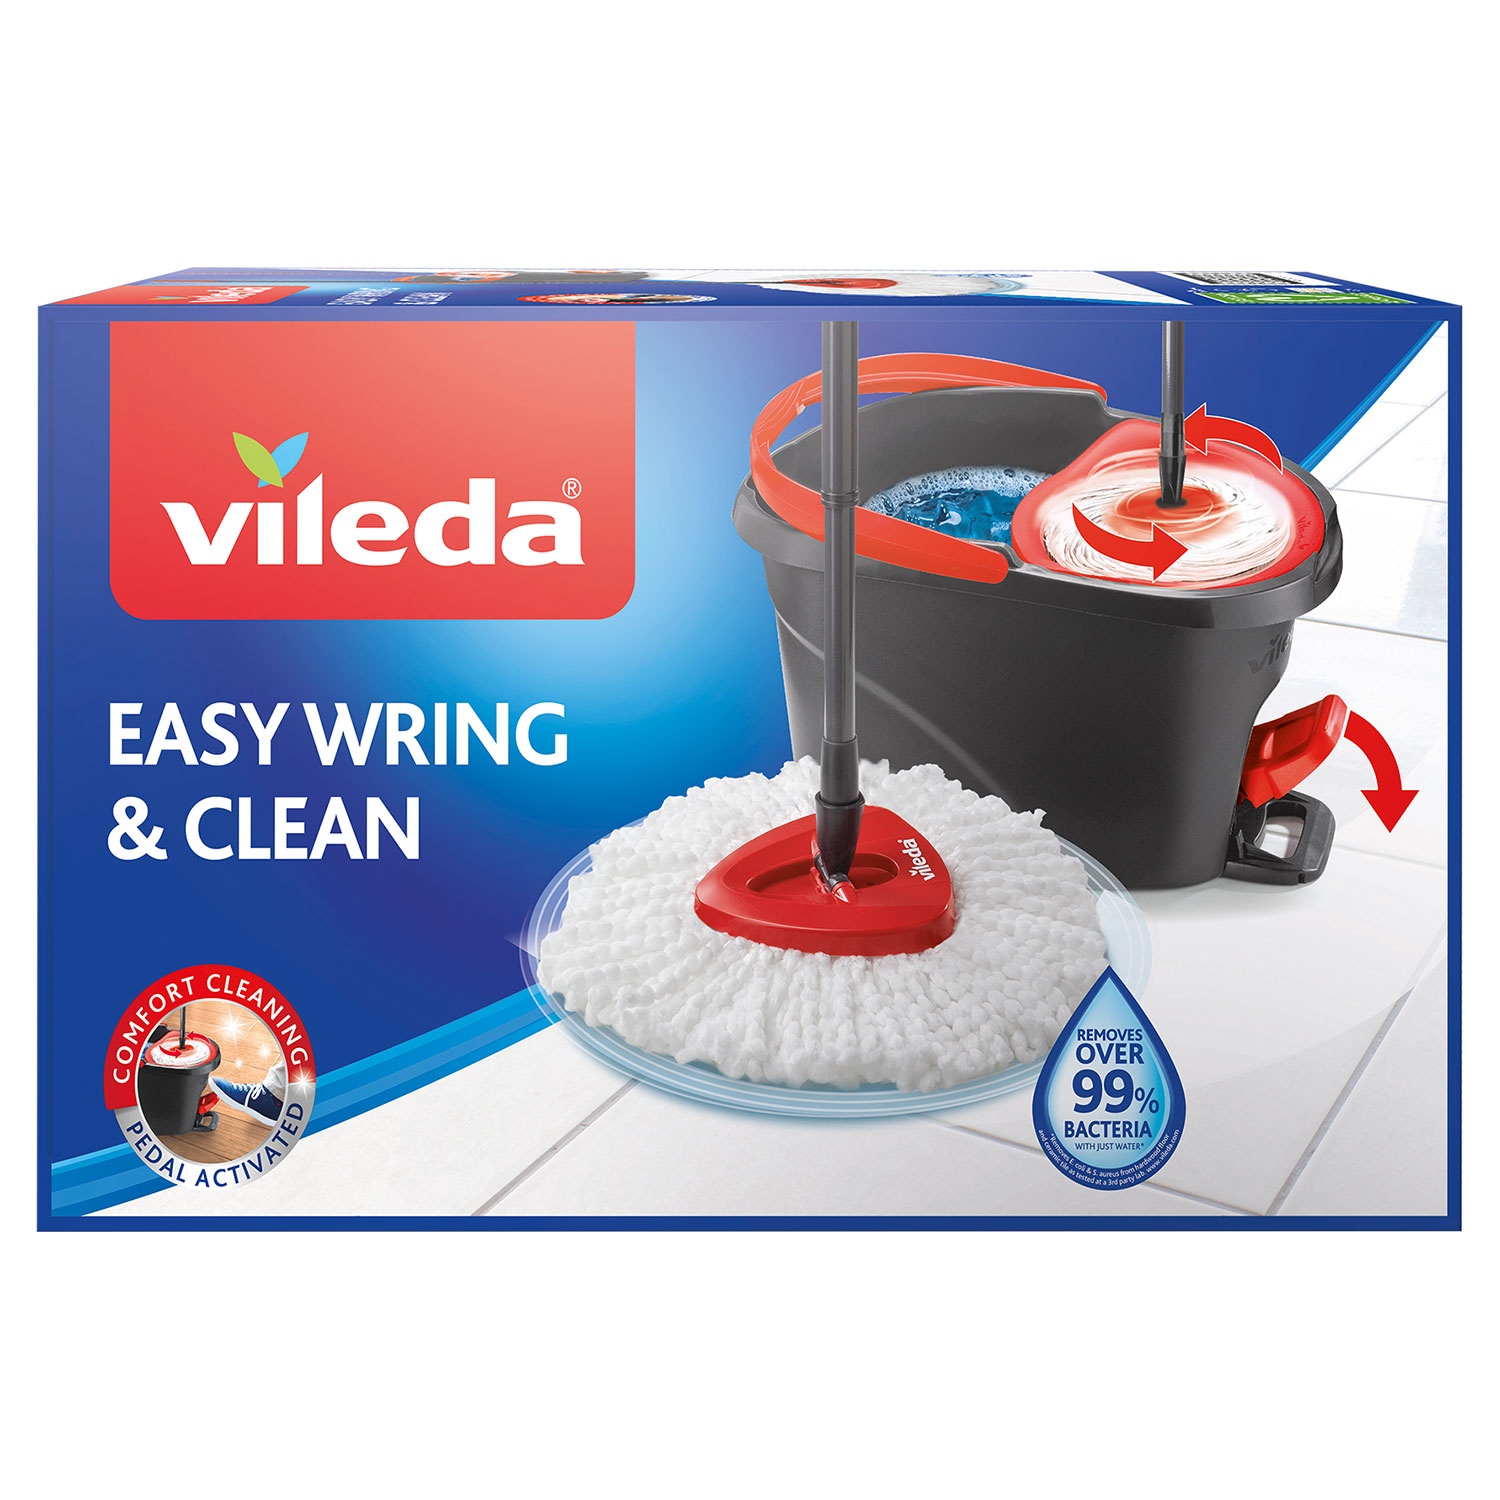 VILEDA Wischmopp-Set "Easy Wring & Clean"